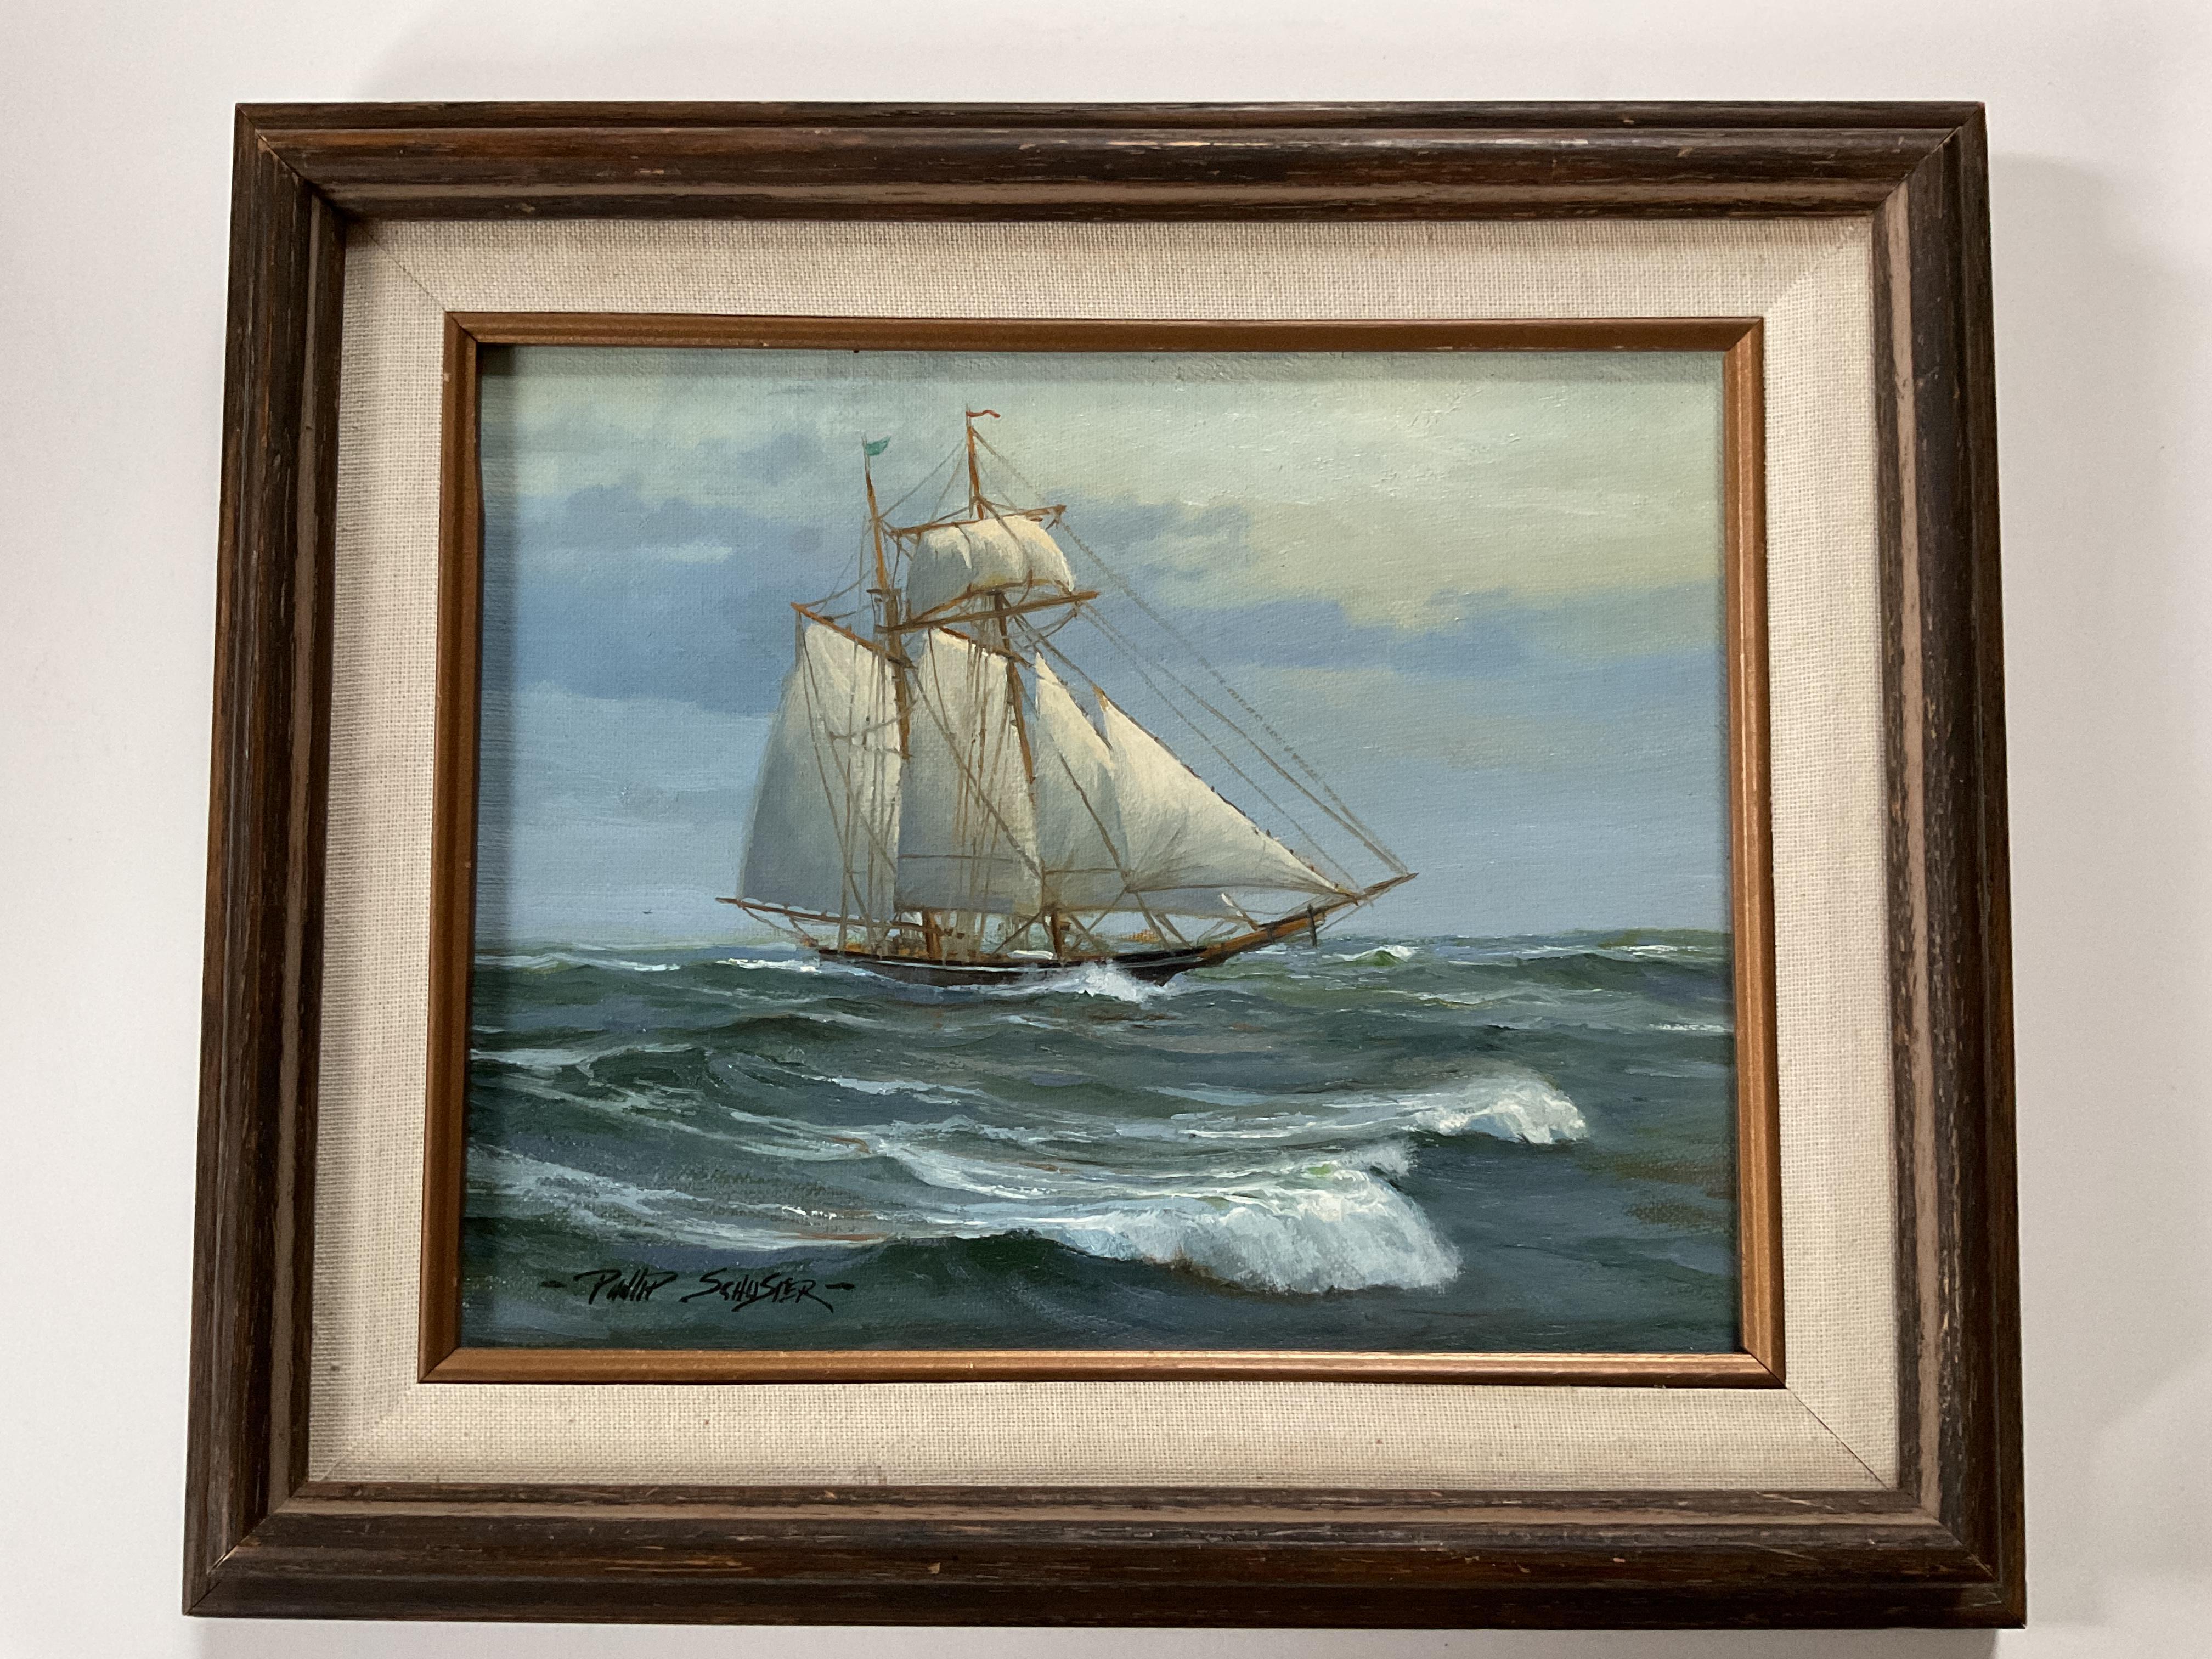 Der Westküstenkünstler Phillips Schuster ist ein bekannter maritimer Maler, der 1948 geboren wurde.  Dieses Werk, das von ihm links unten signiert und auf der Rückseite mit "Last Days" betitelt ist, bezieht sich möglicherweise auf das Ende der Reise